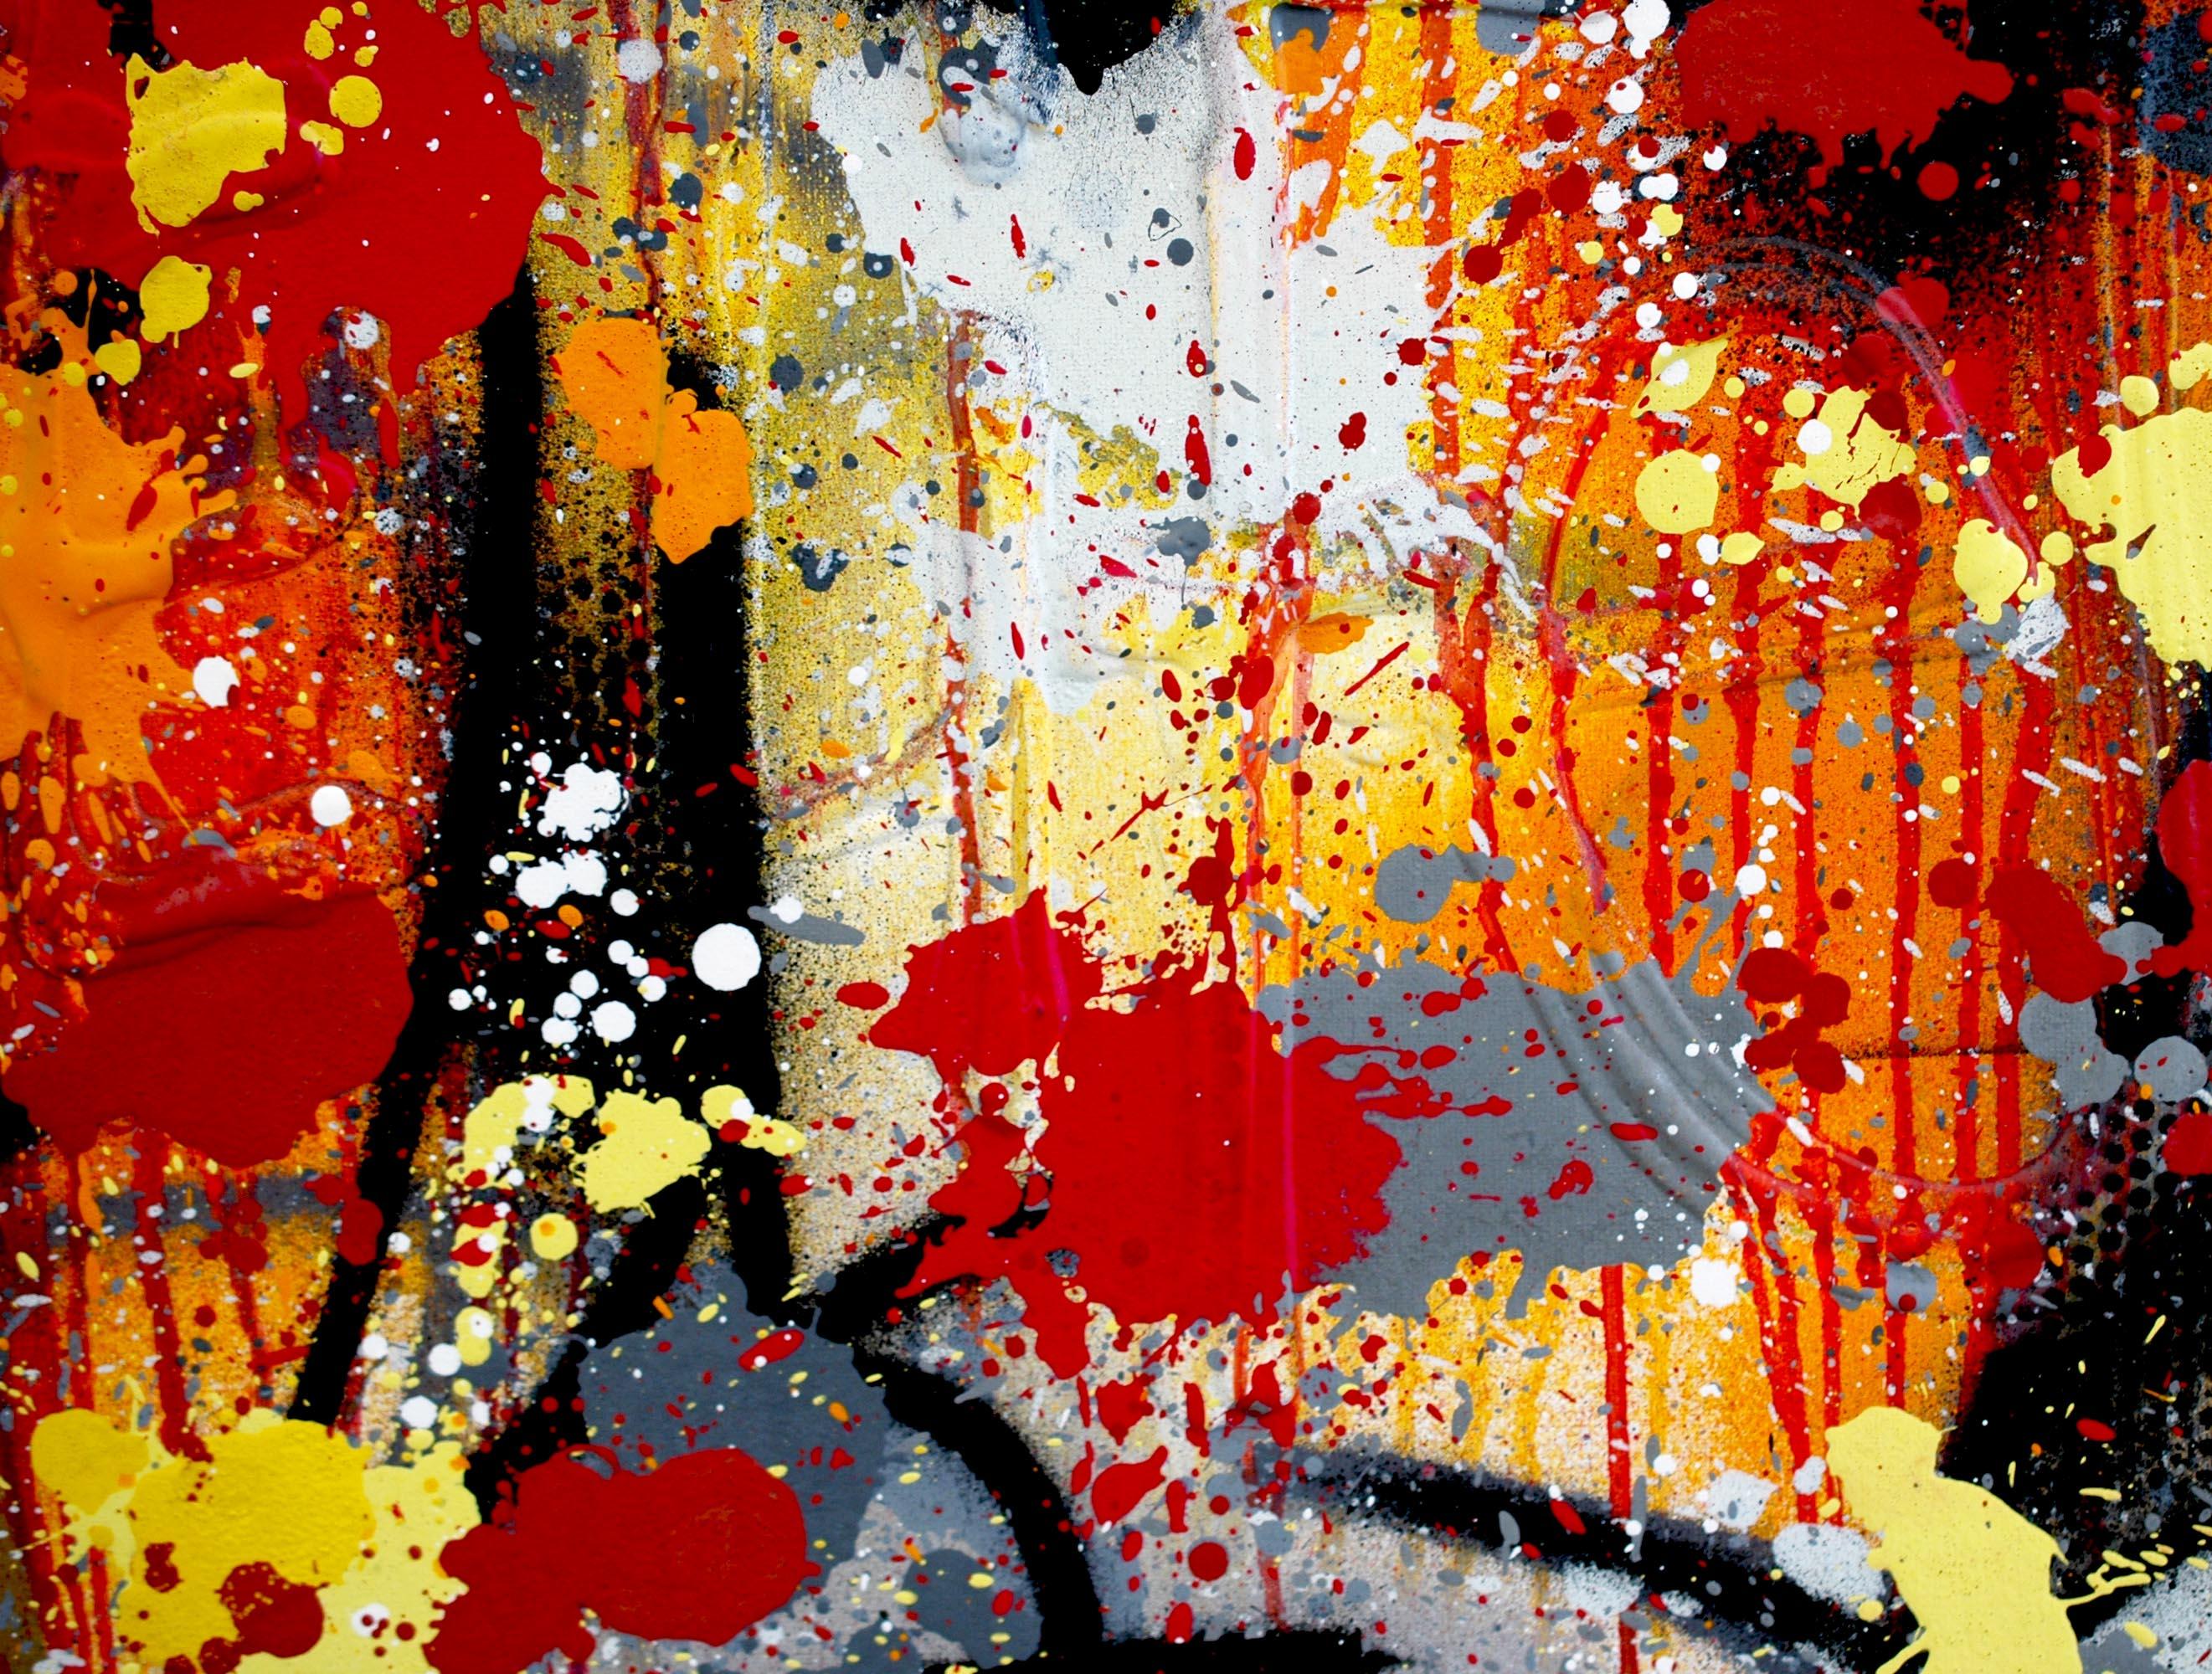 Originelle und einzigartige Kunstwerke von NEBAY
Spray und Acryl auf Leinwand
130 x 97 cm (51,2 x 38,2 Zoll)
schwarzer Karton (135 x 102 x 4 cm) - (53,1 x 40,2 x 1,6 Zoll)
Signiert von der Künstlerin
Echtheitszertifikat
